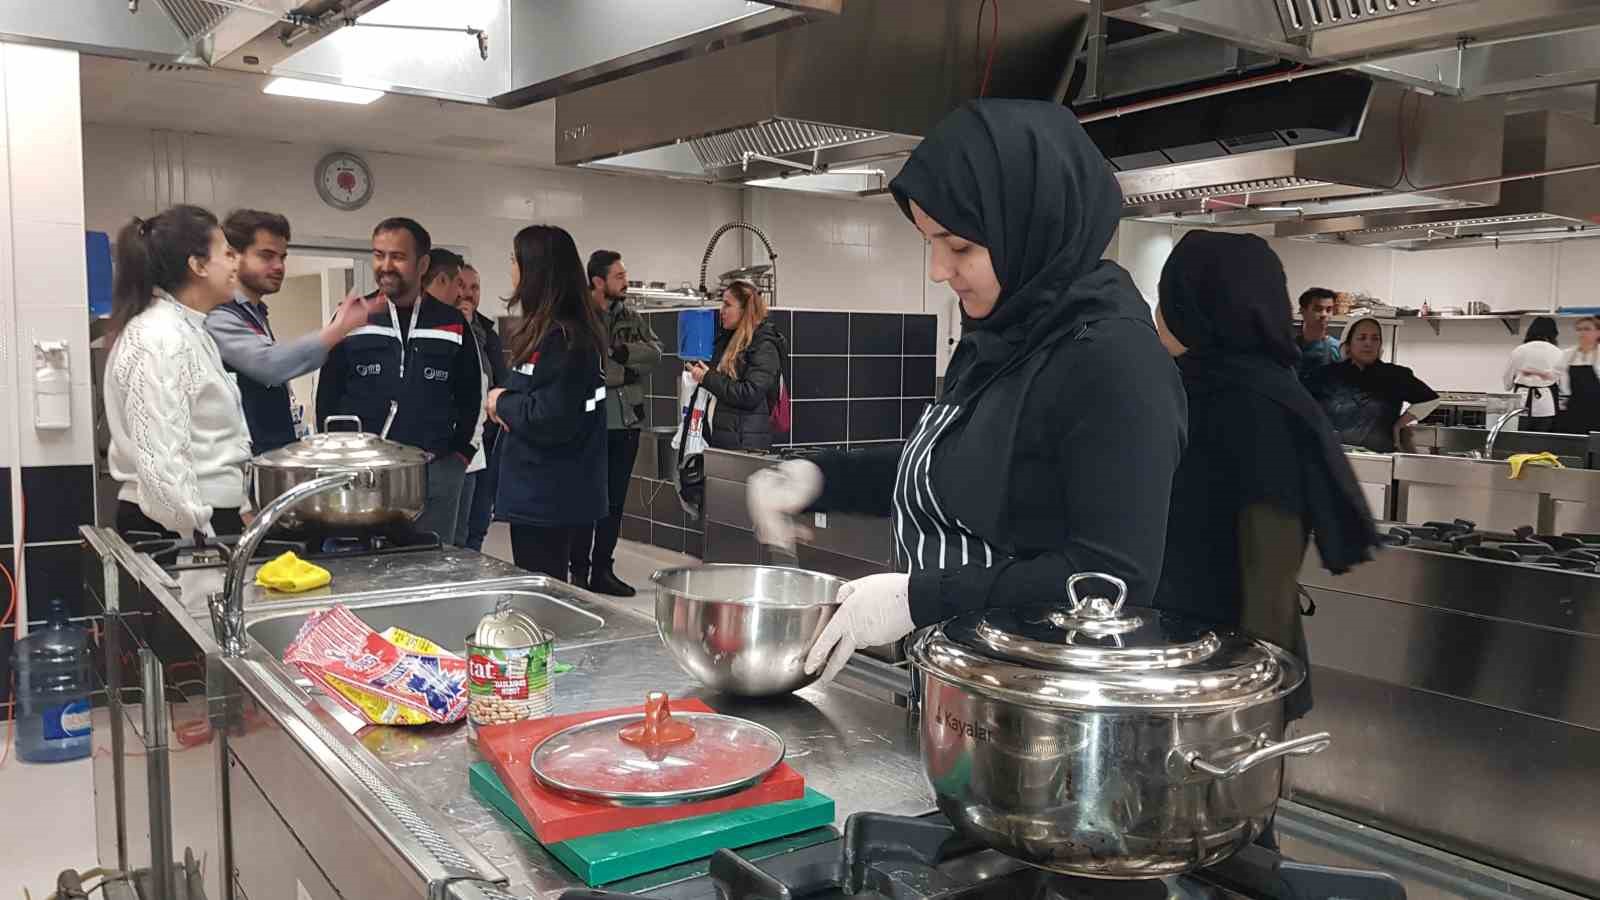 Mültecilere yurt dışında çalışma imkanı sağlayacak ’Aşçılık Kursu’ tamamlandı
